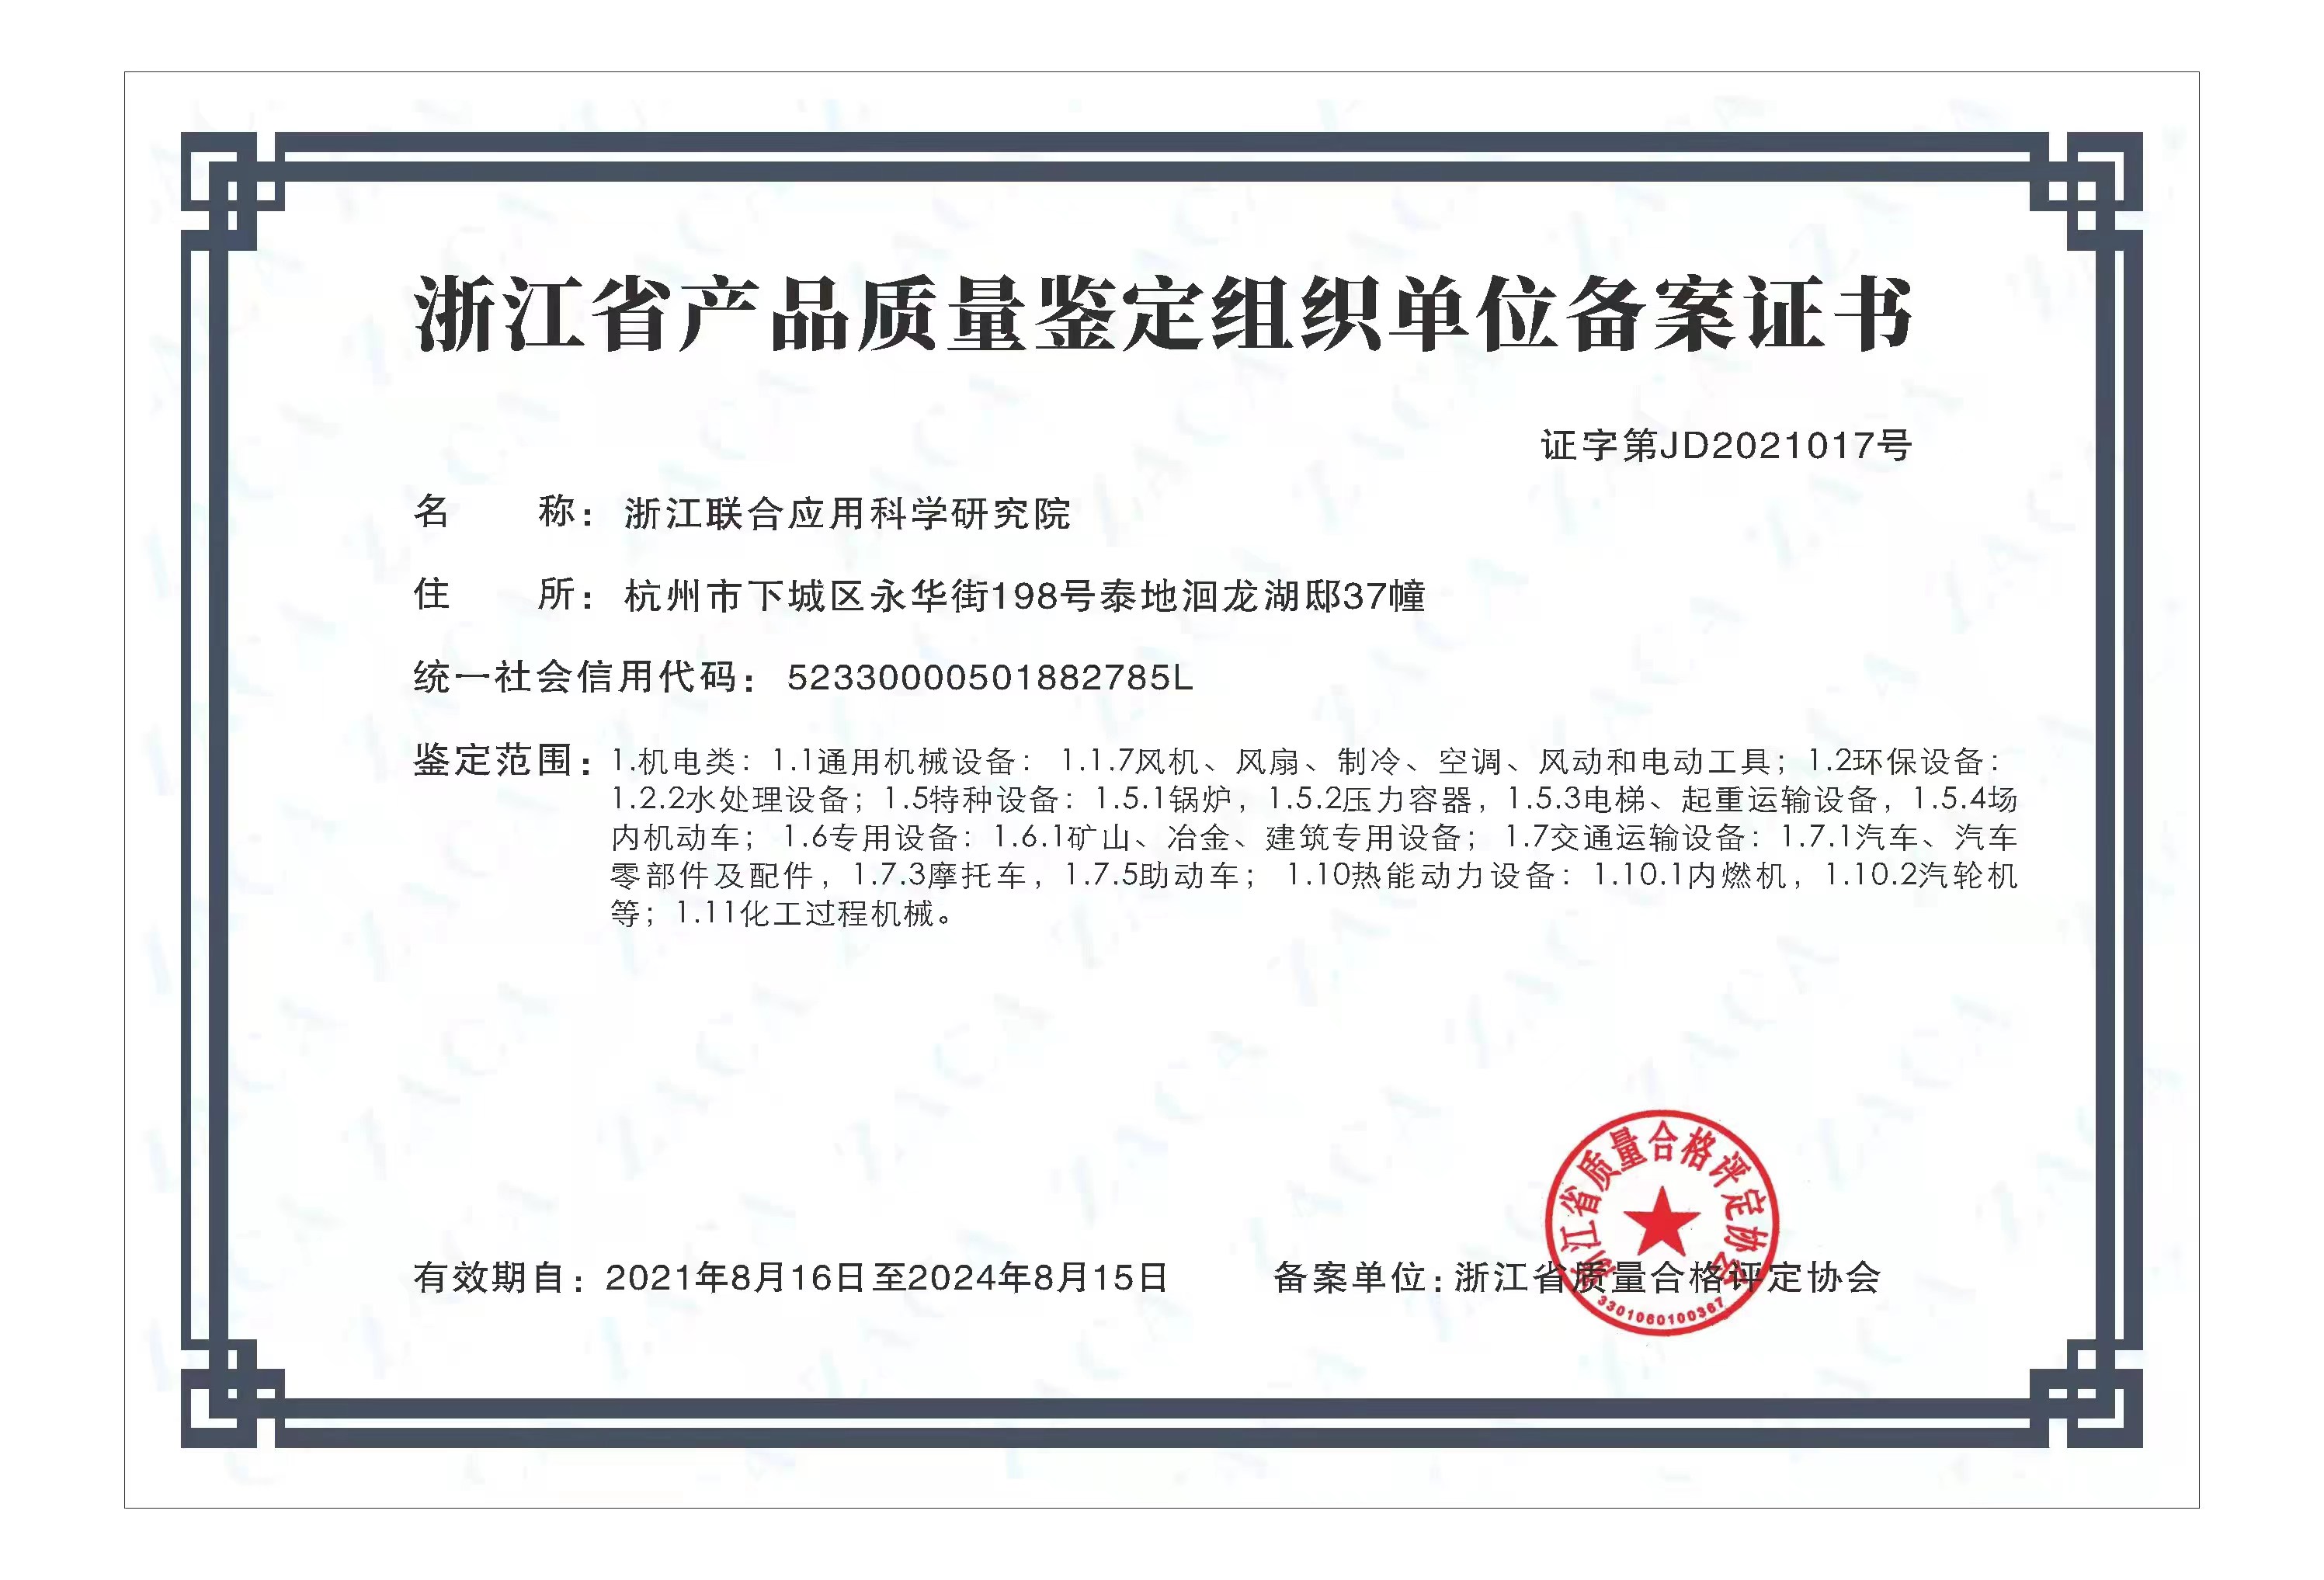 浙江省产品质量组织单位备案证书